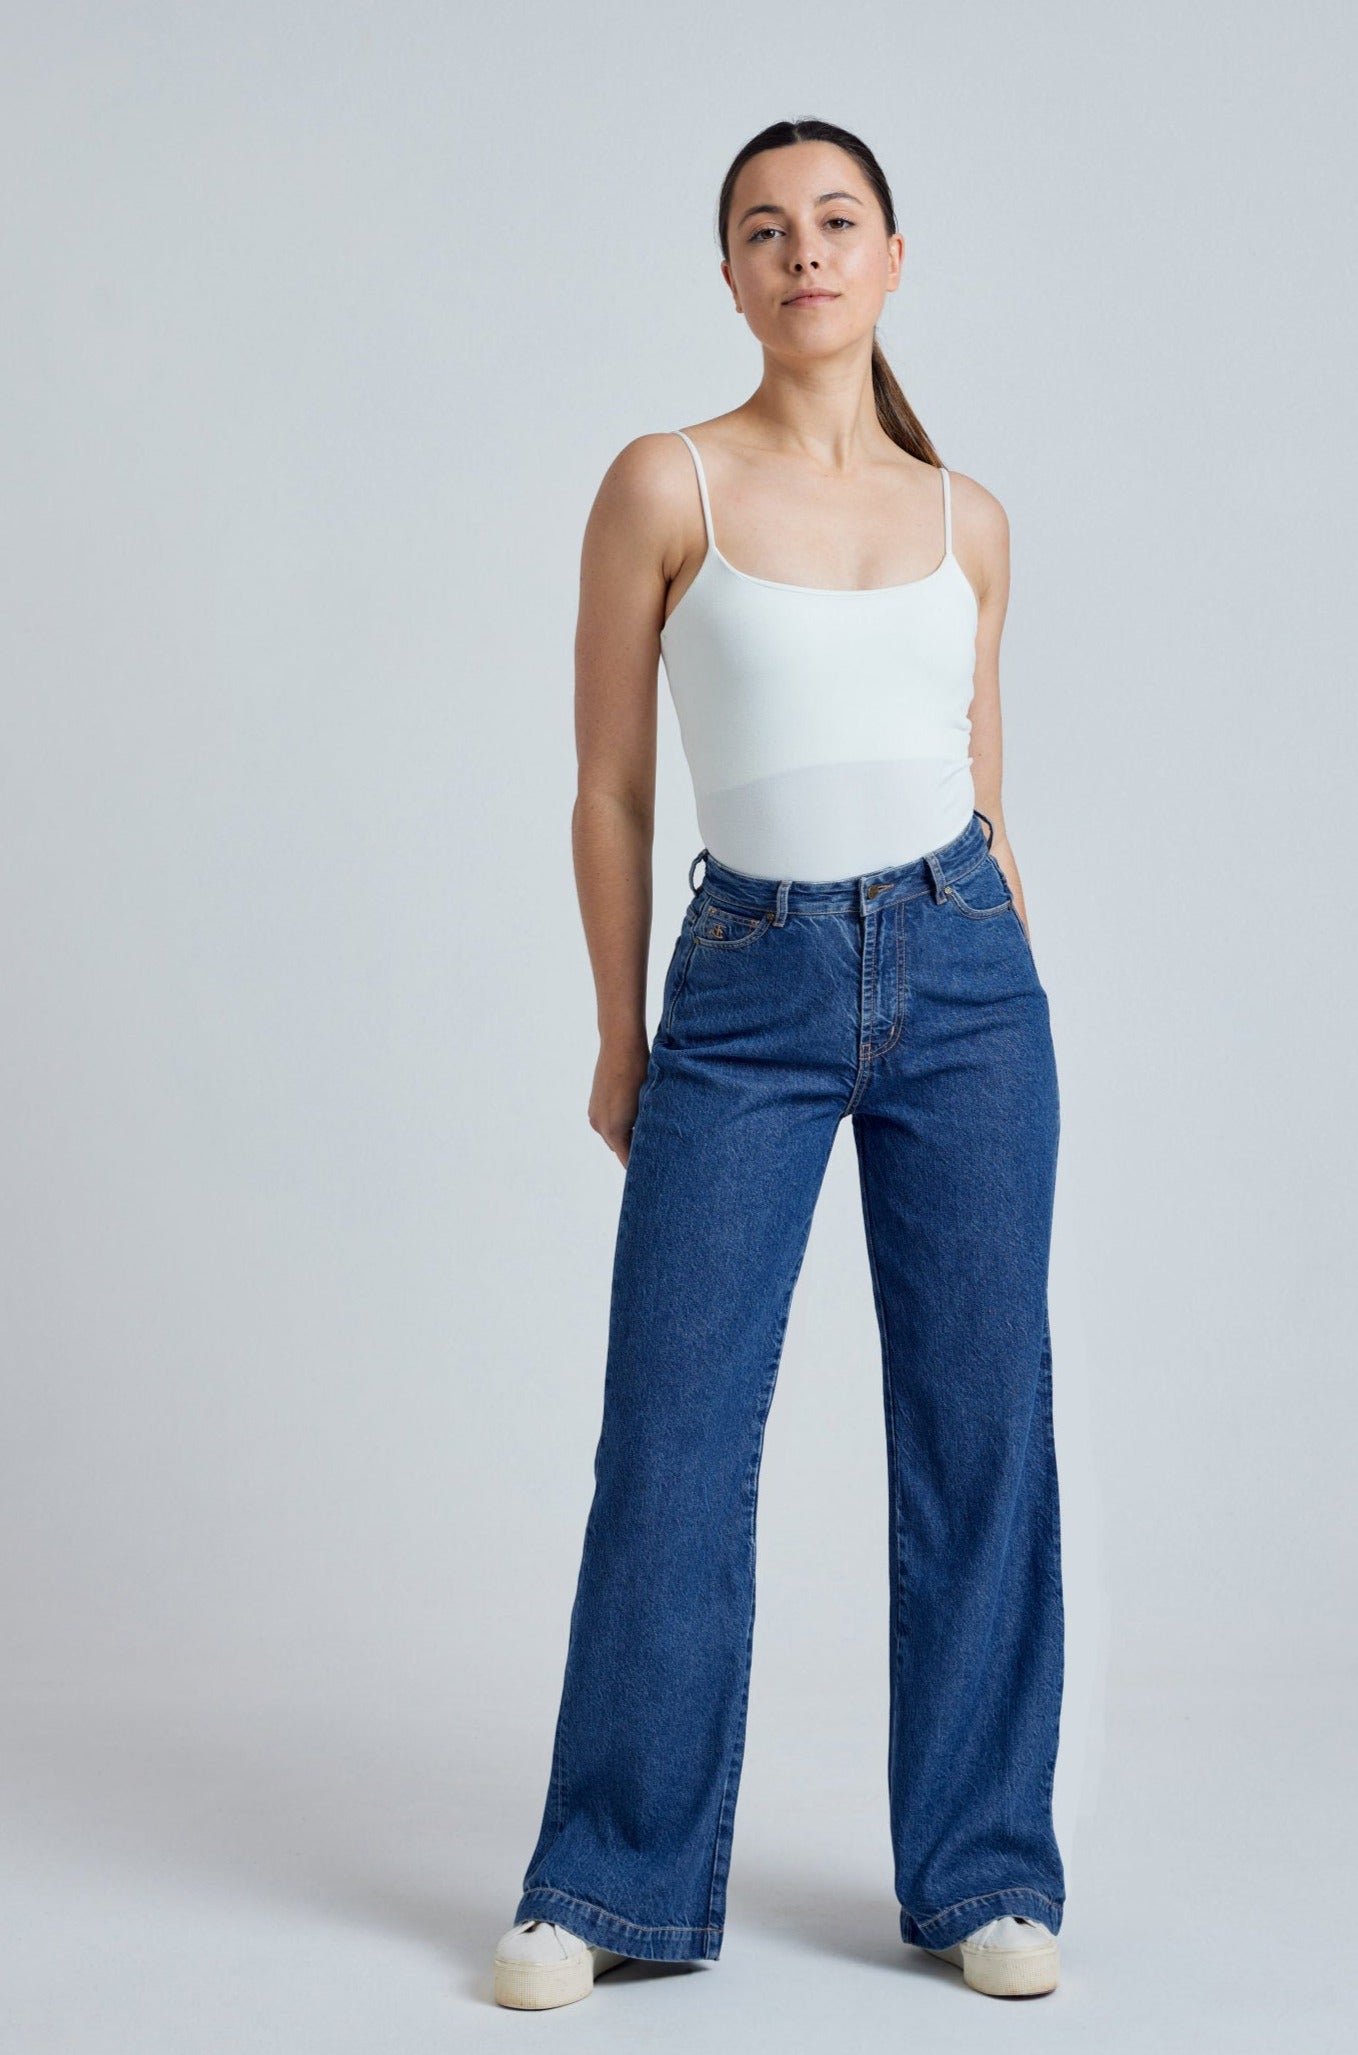 ETTA High Waist - GOTS Organic Cotton Jeans by Flax & Loom, 26" / Regular